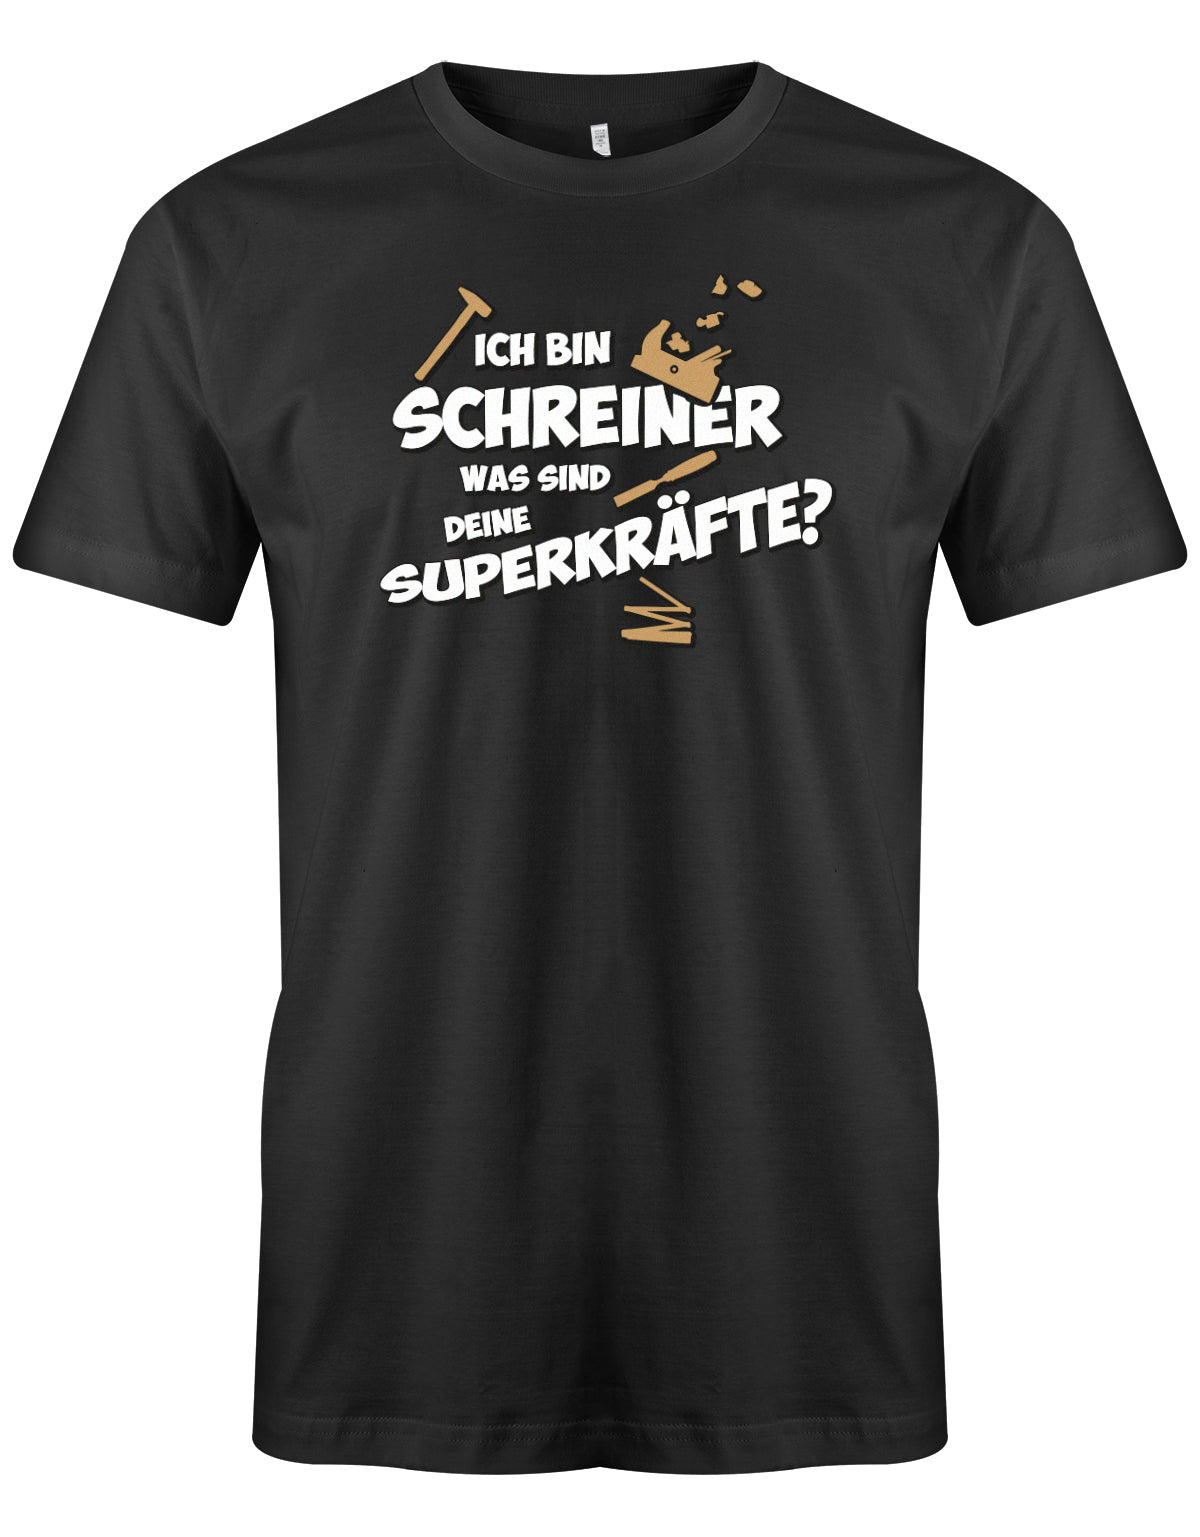 Schreiner und Tischler Shirt. Männer Shirt bedruckt mit: Ich bin Schreiner was sind deine Superkräfte? Schwarz